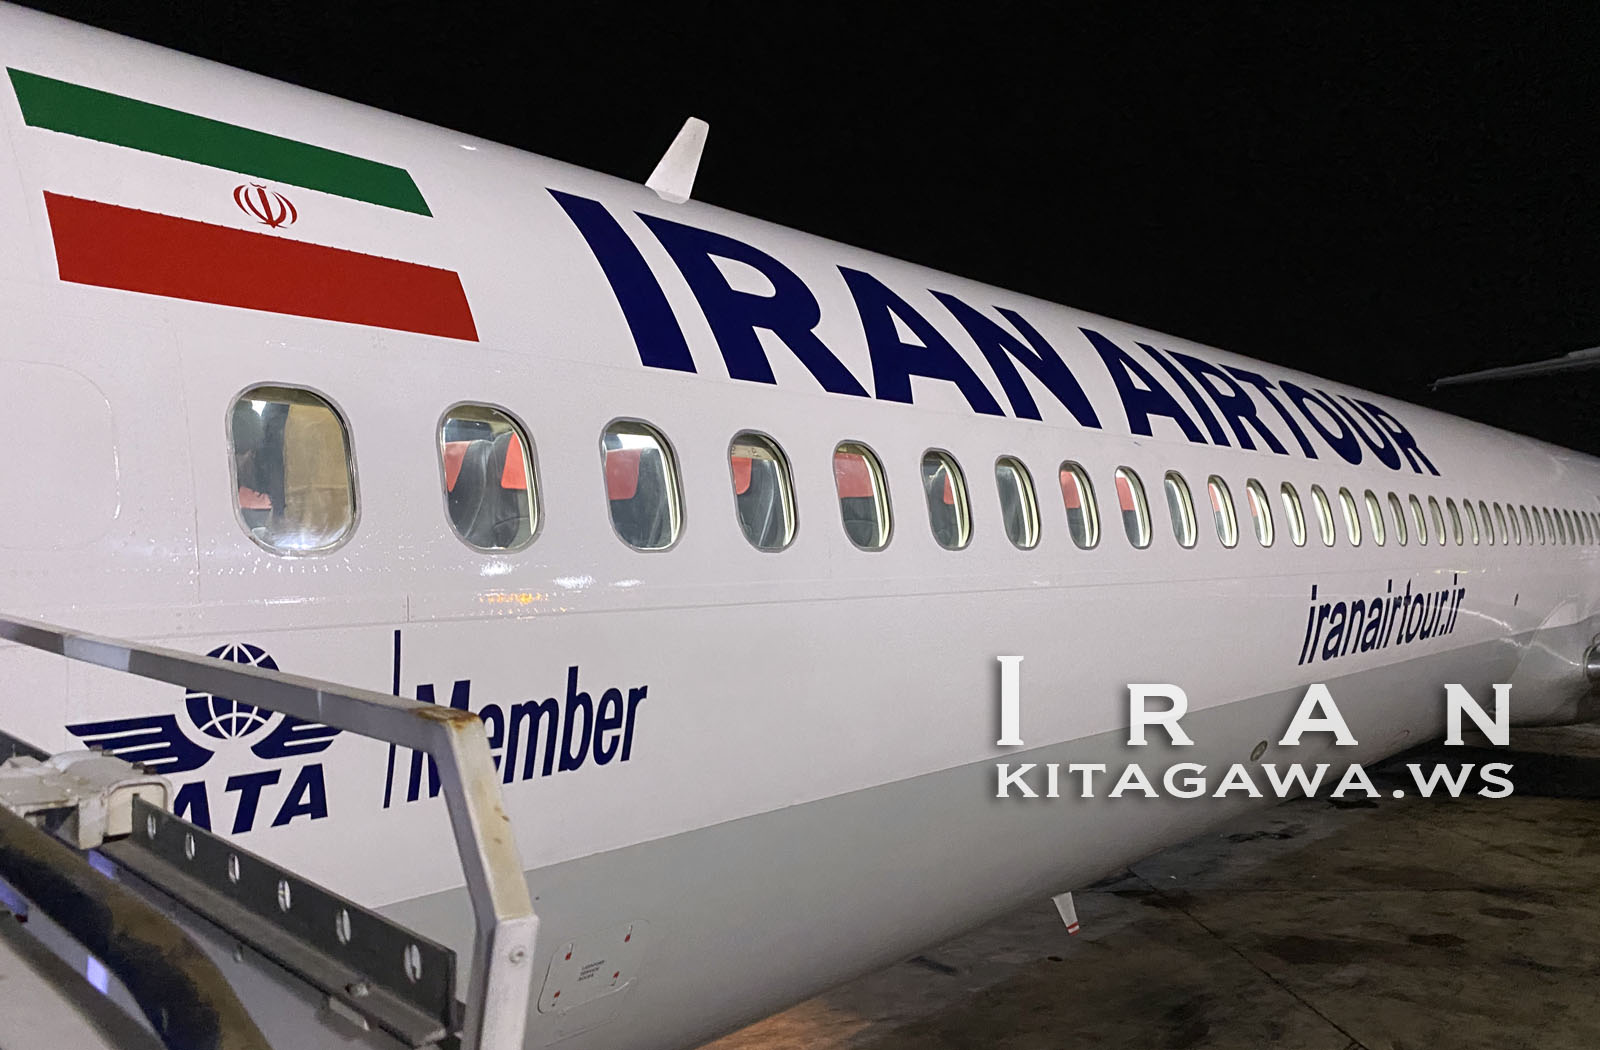 Iran Airtours